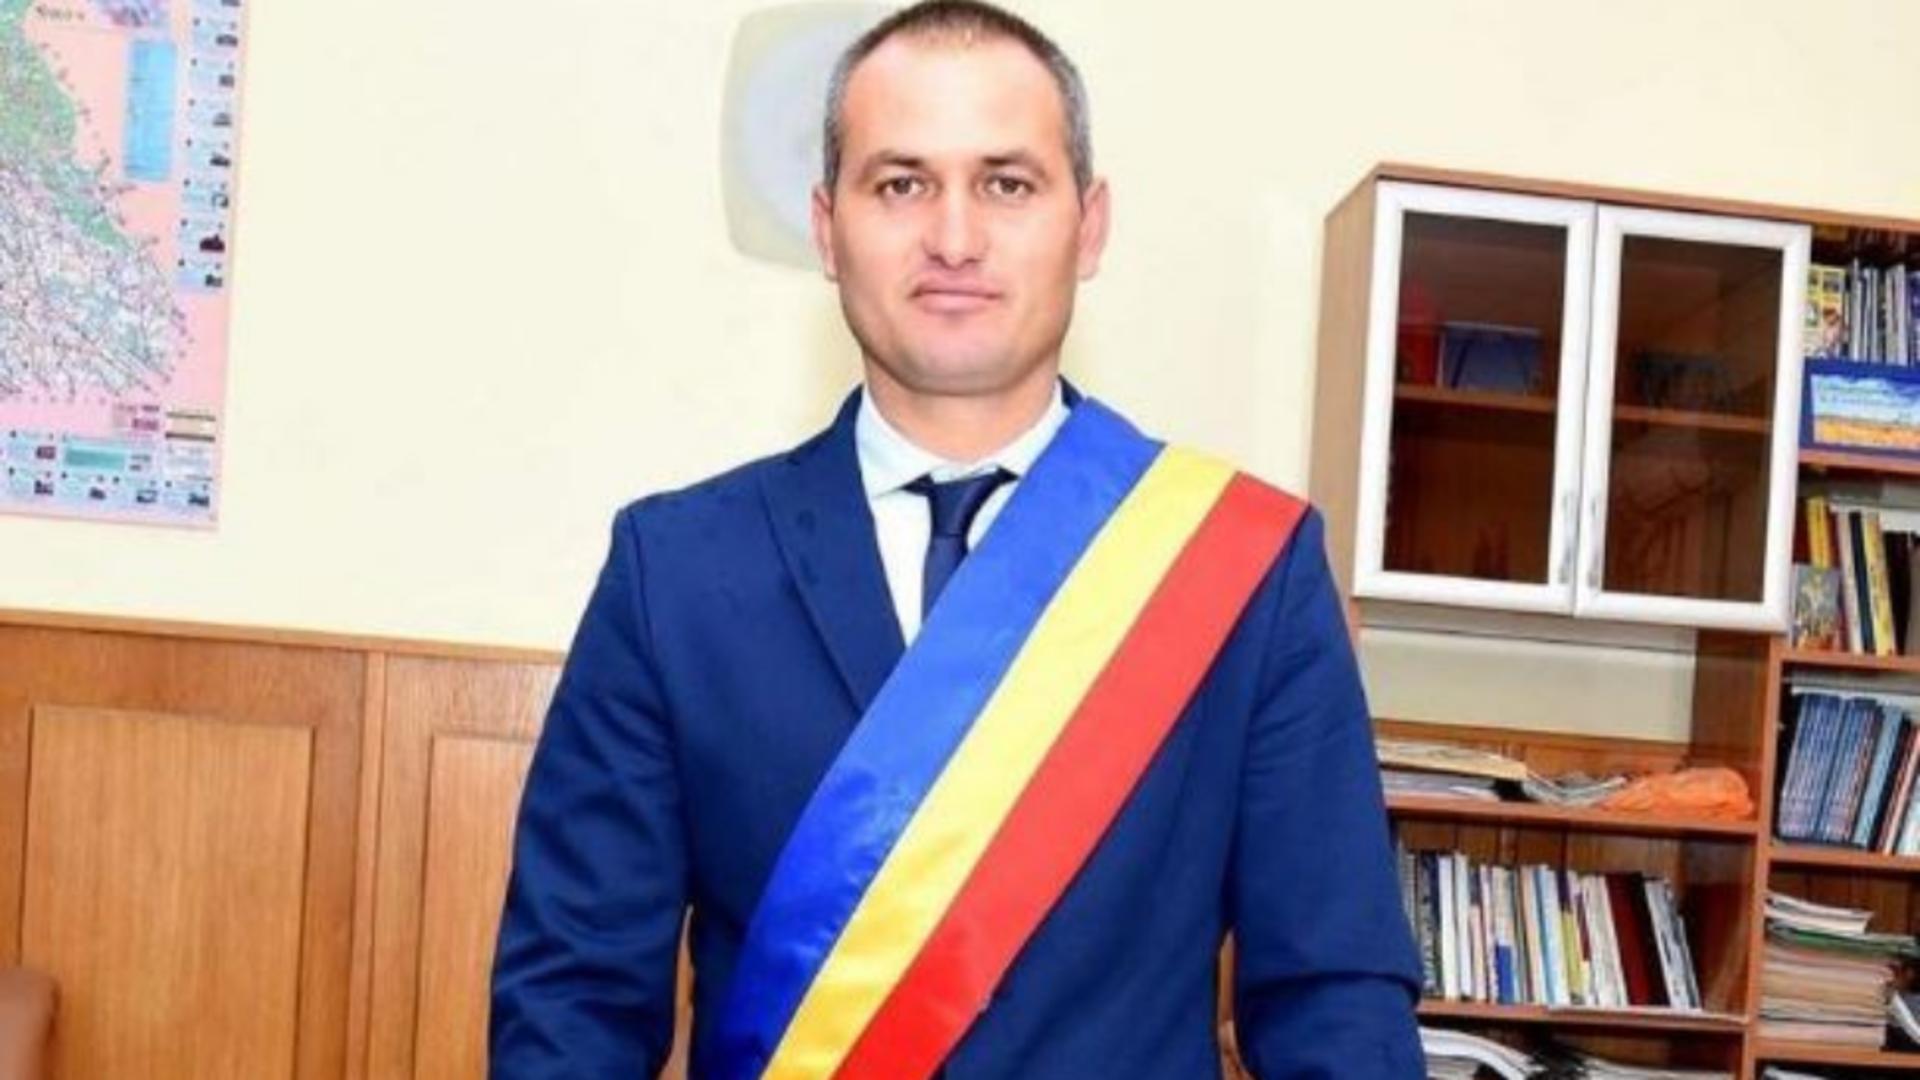 Florin Petre, primarul din Crevedia, are o condamnare penală la activ. Foto/FB